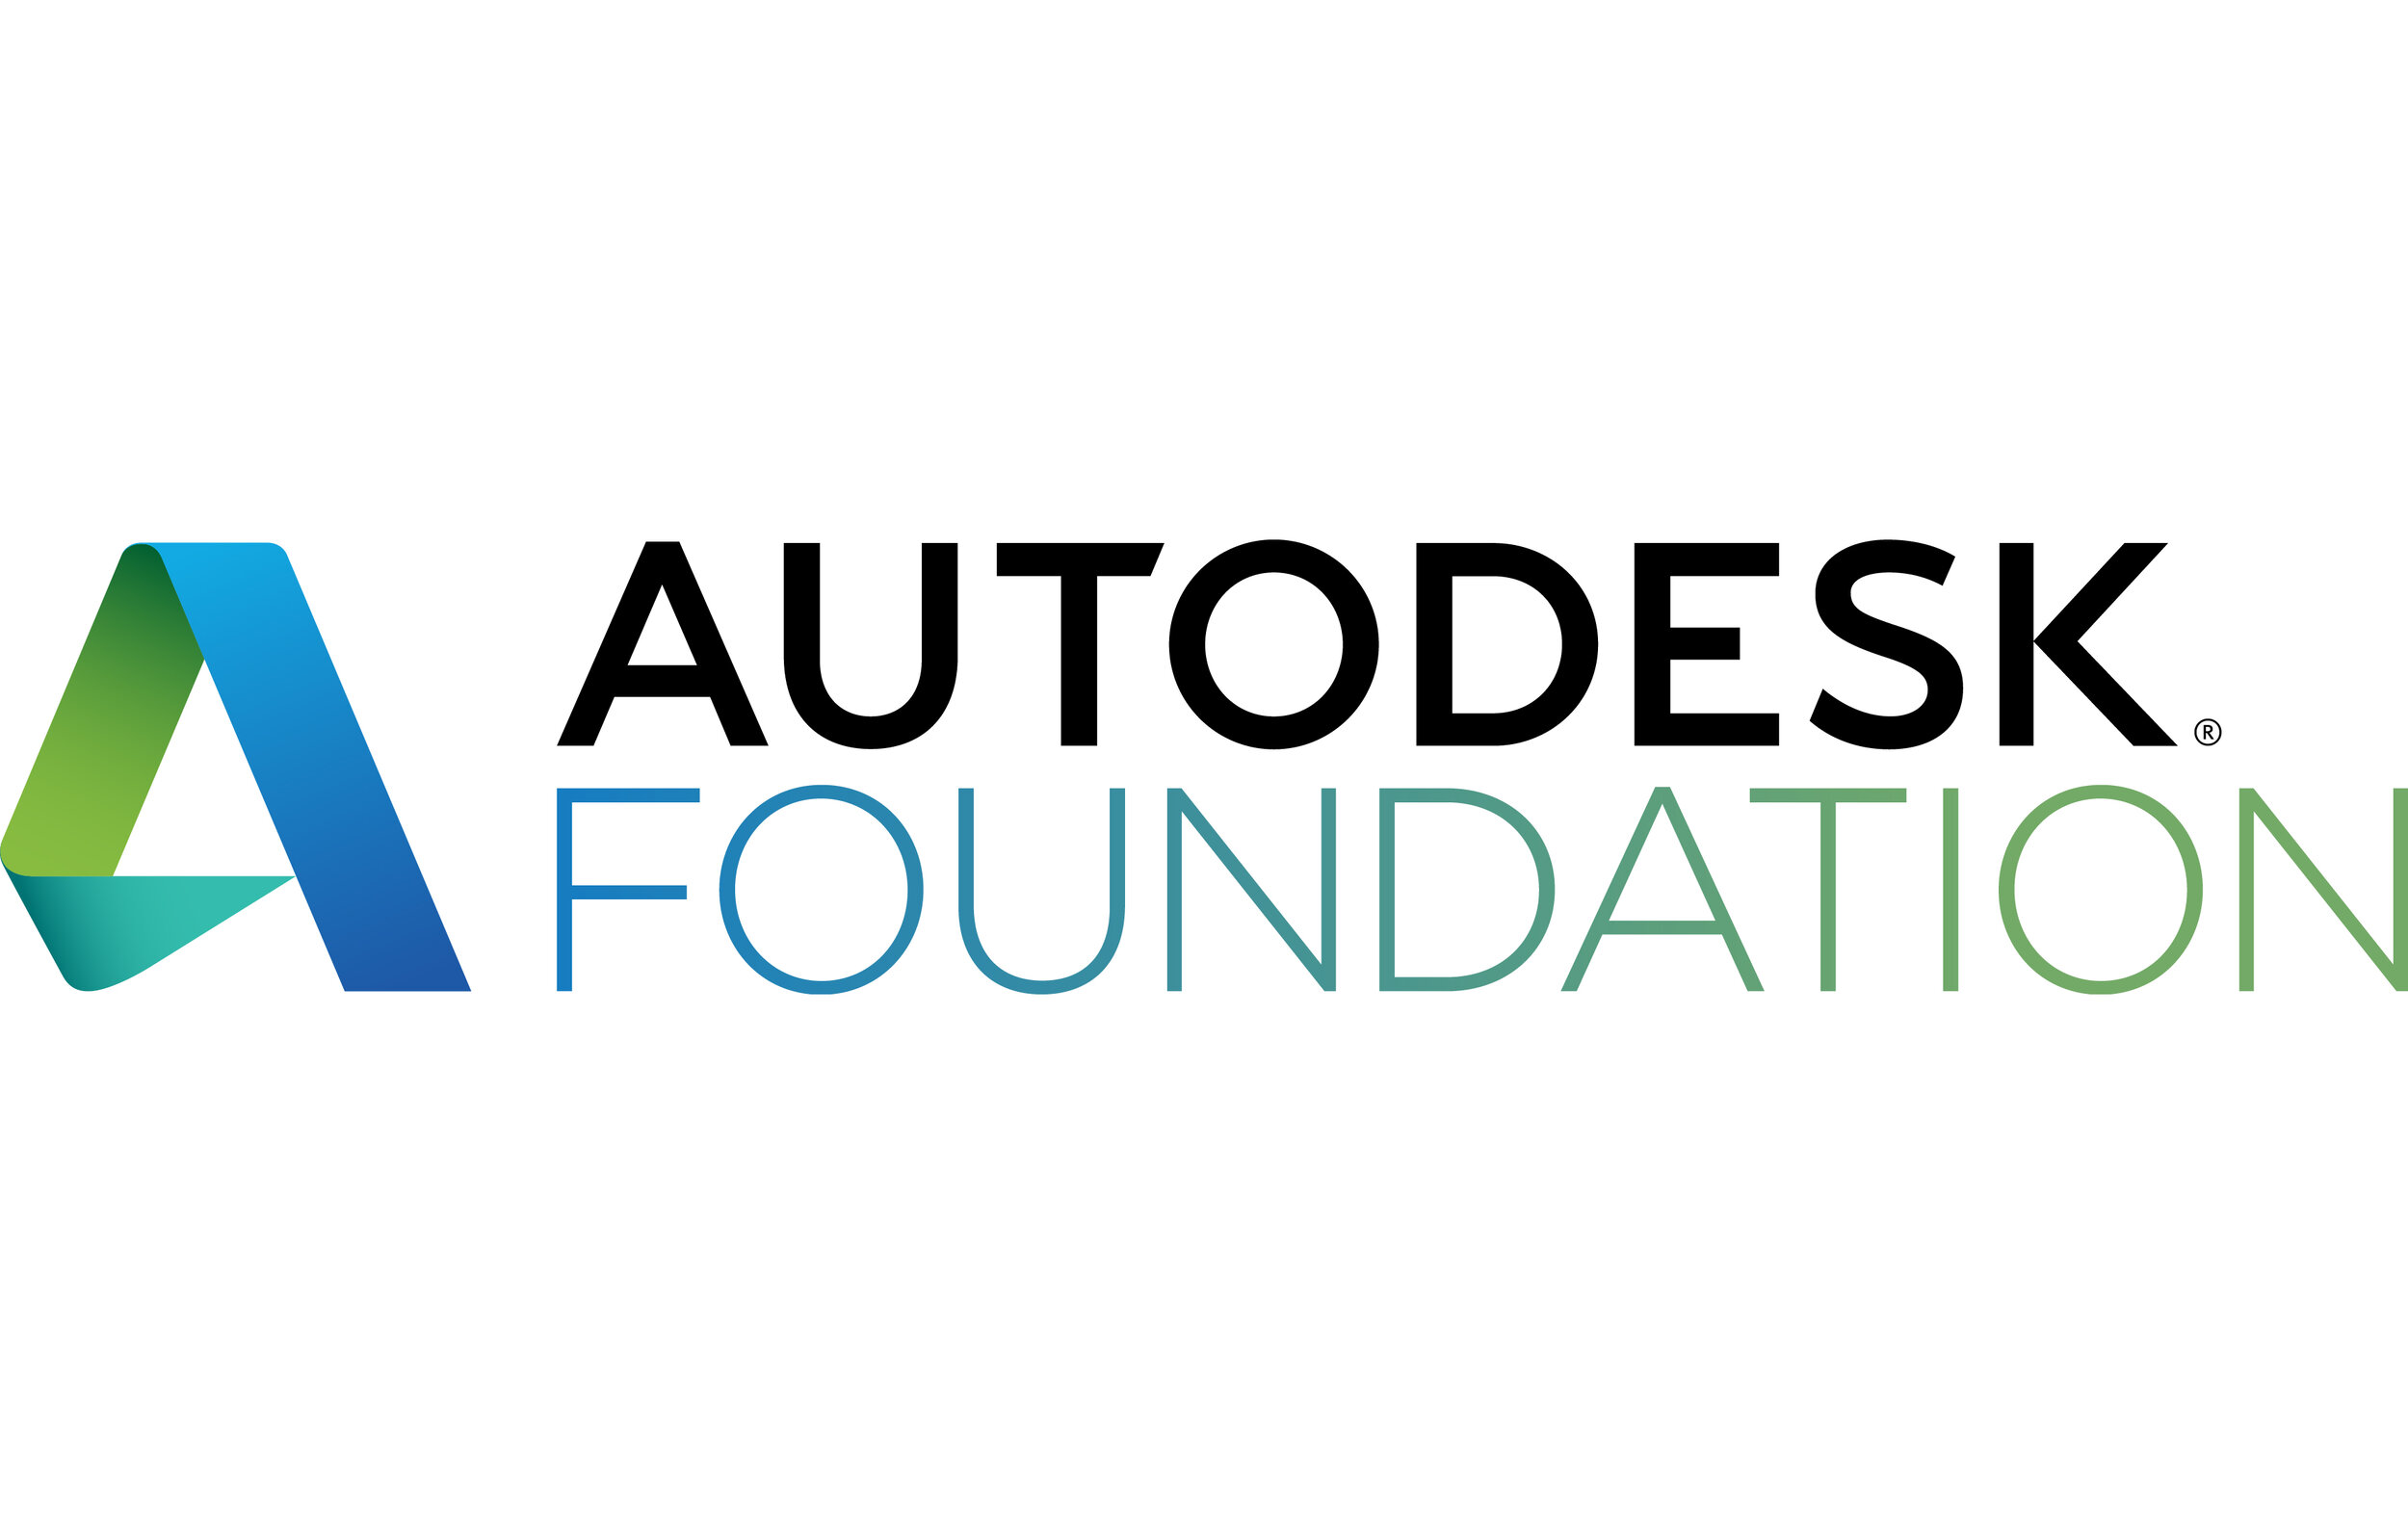 autodesk-foundation-logo-rgb-black-text-stacked-large.jpg